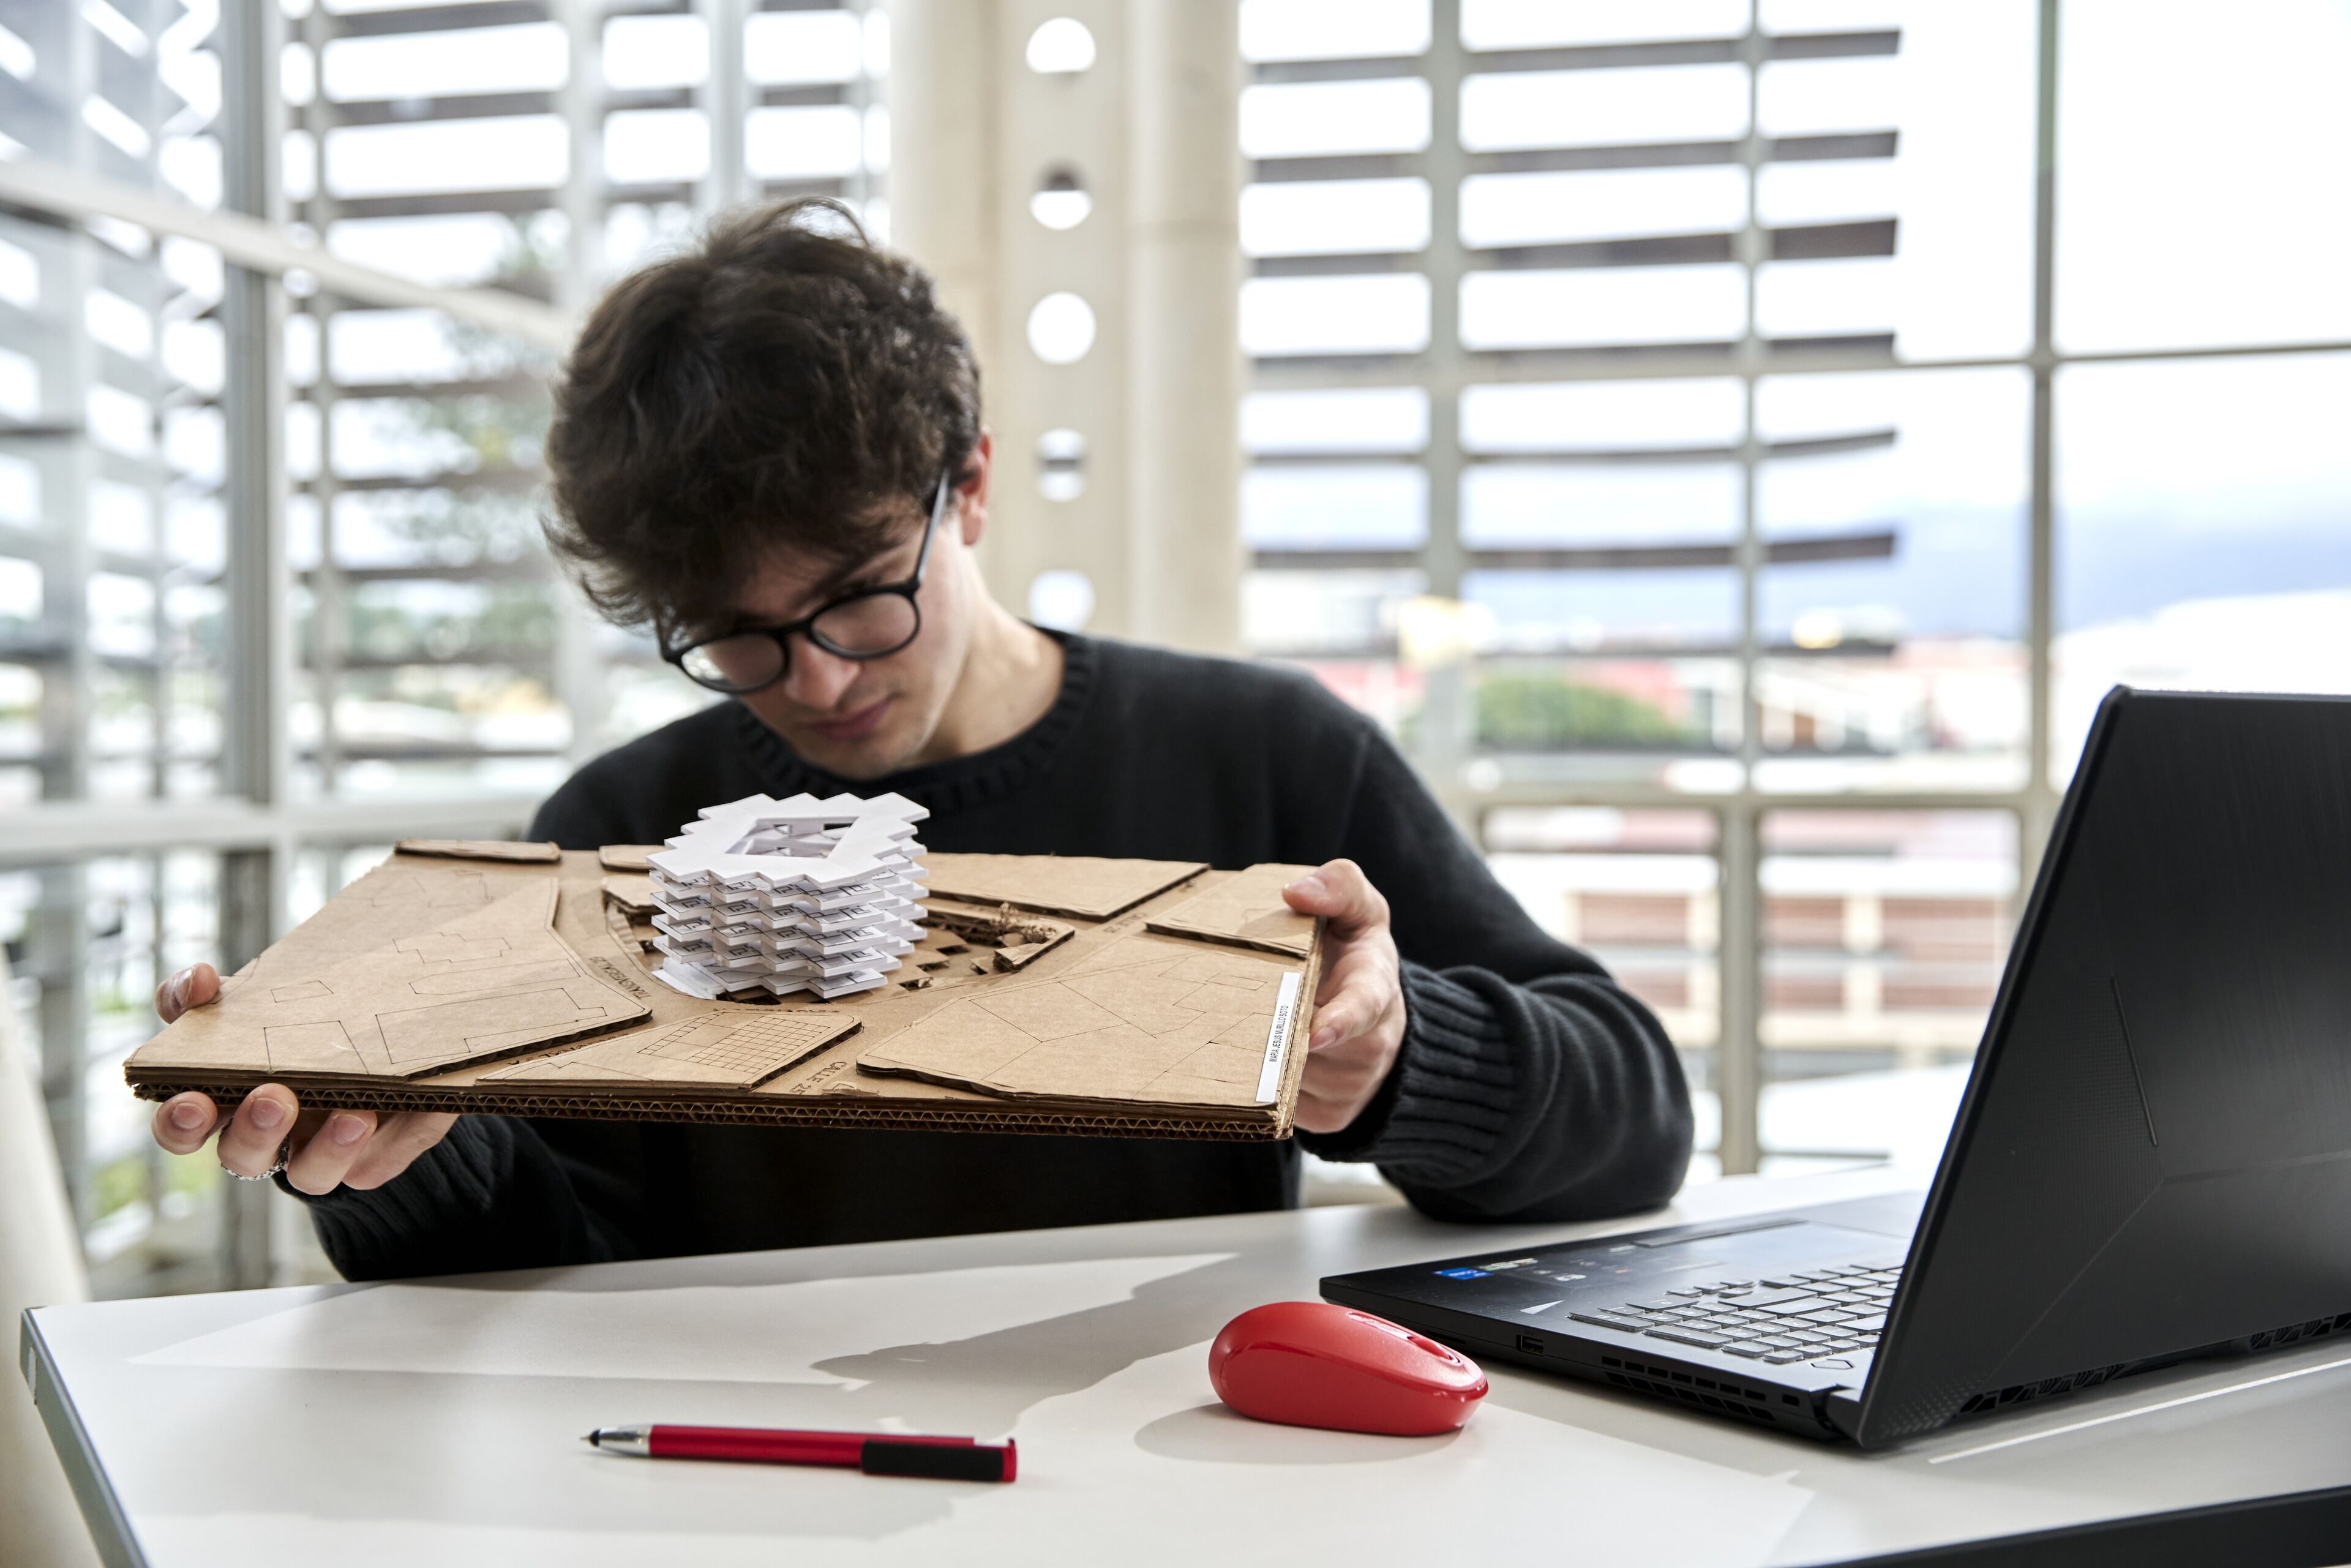 ImageUn jeune architecte examine attentivement un modèle architectural blanc sur un socle en carton, avec un ordinateur portable et une souris rouge sur la table.